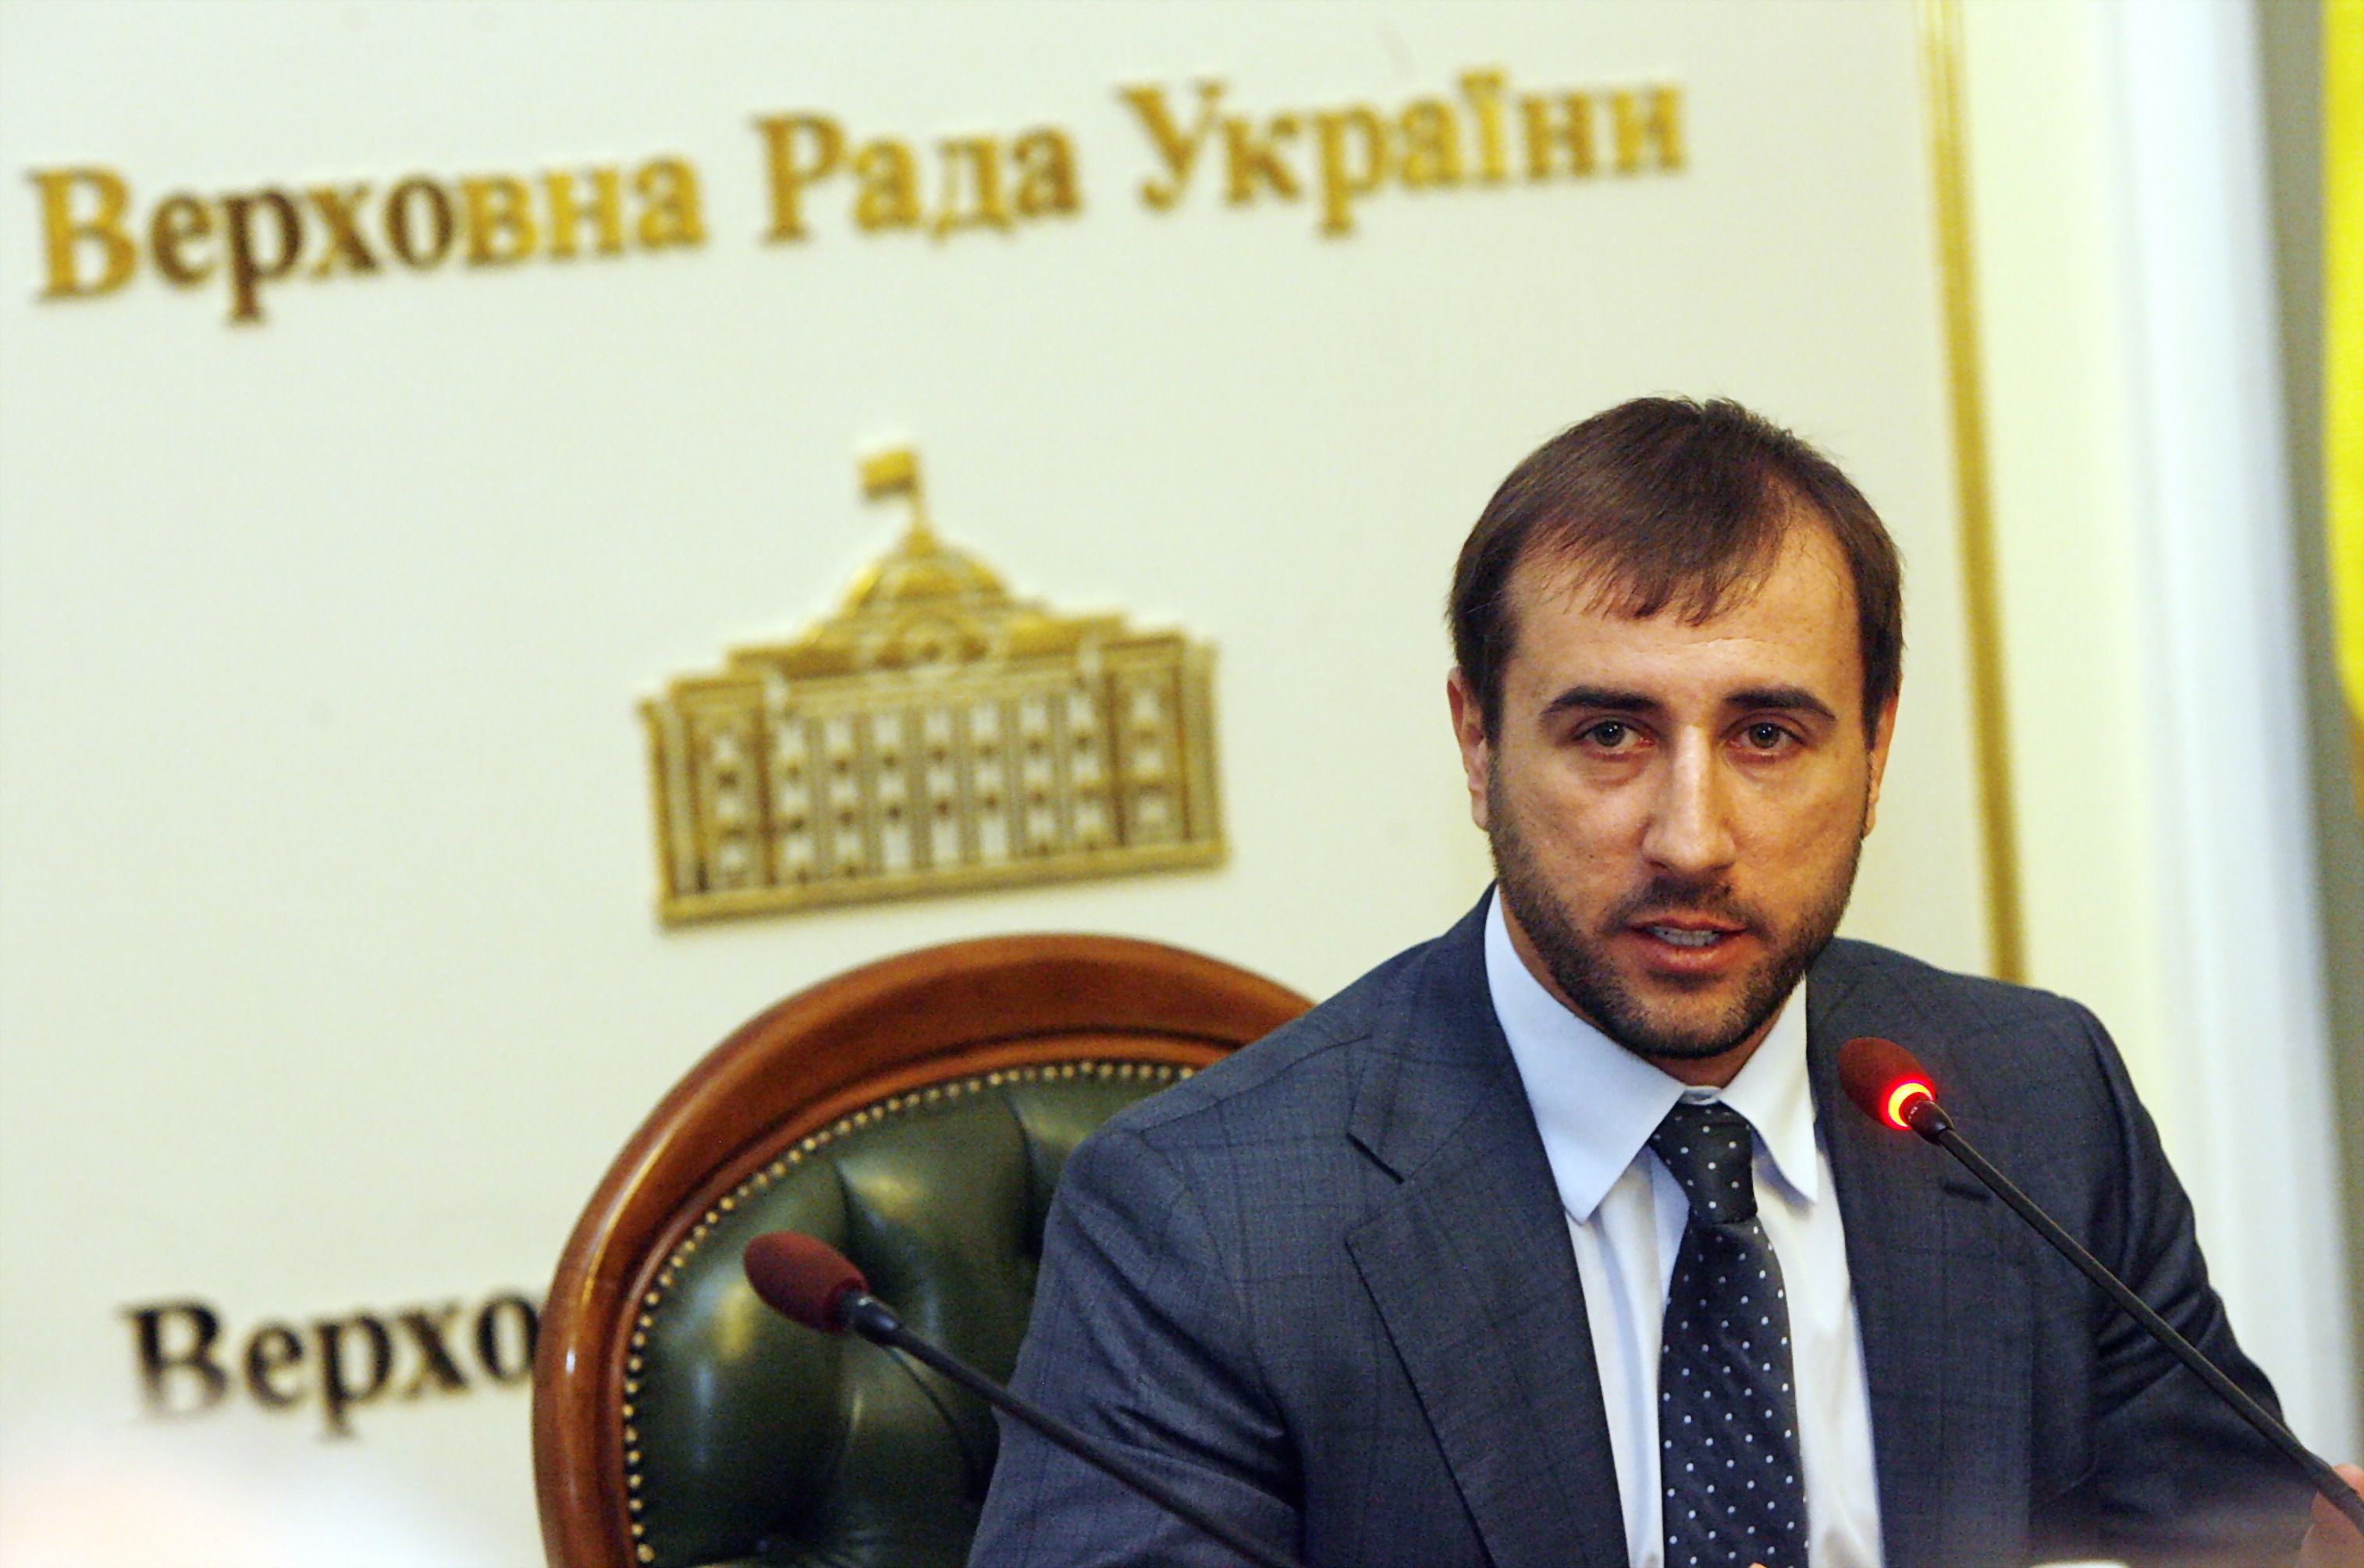 Главу фінкомітету Ради відправили у відставку. Сергія Рибалку відправили у відставку з посади голови фінансового комітету Верховної Ради.